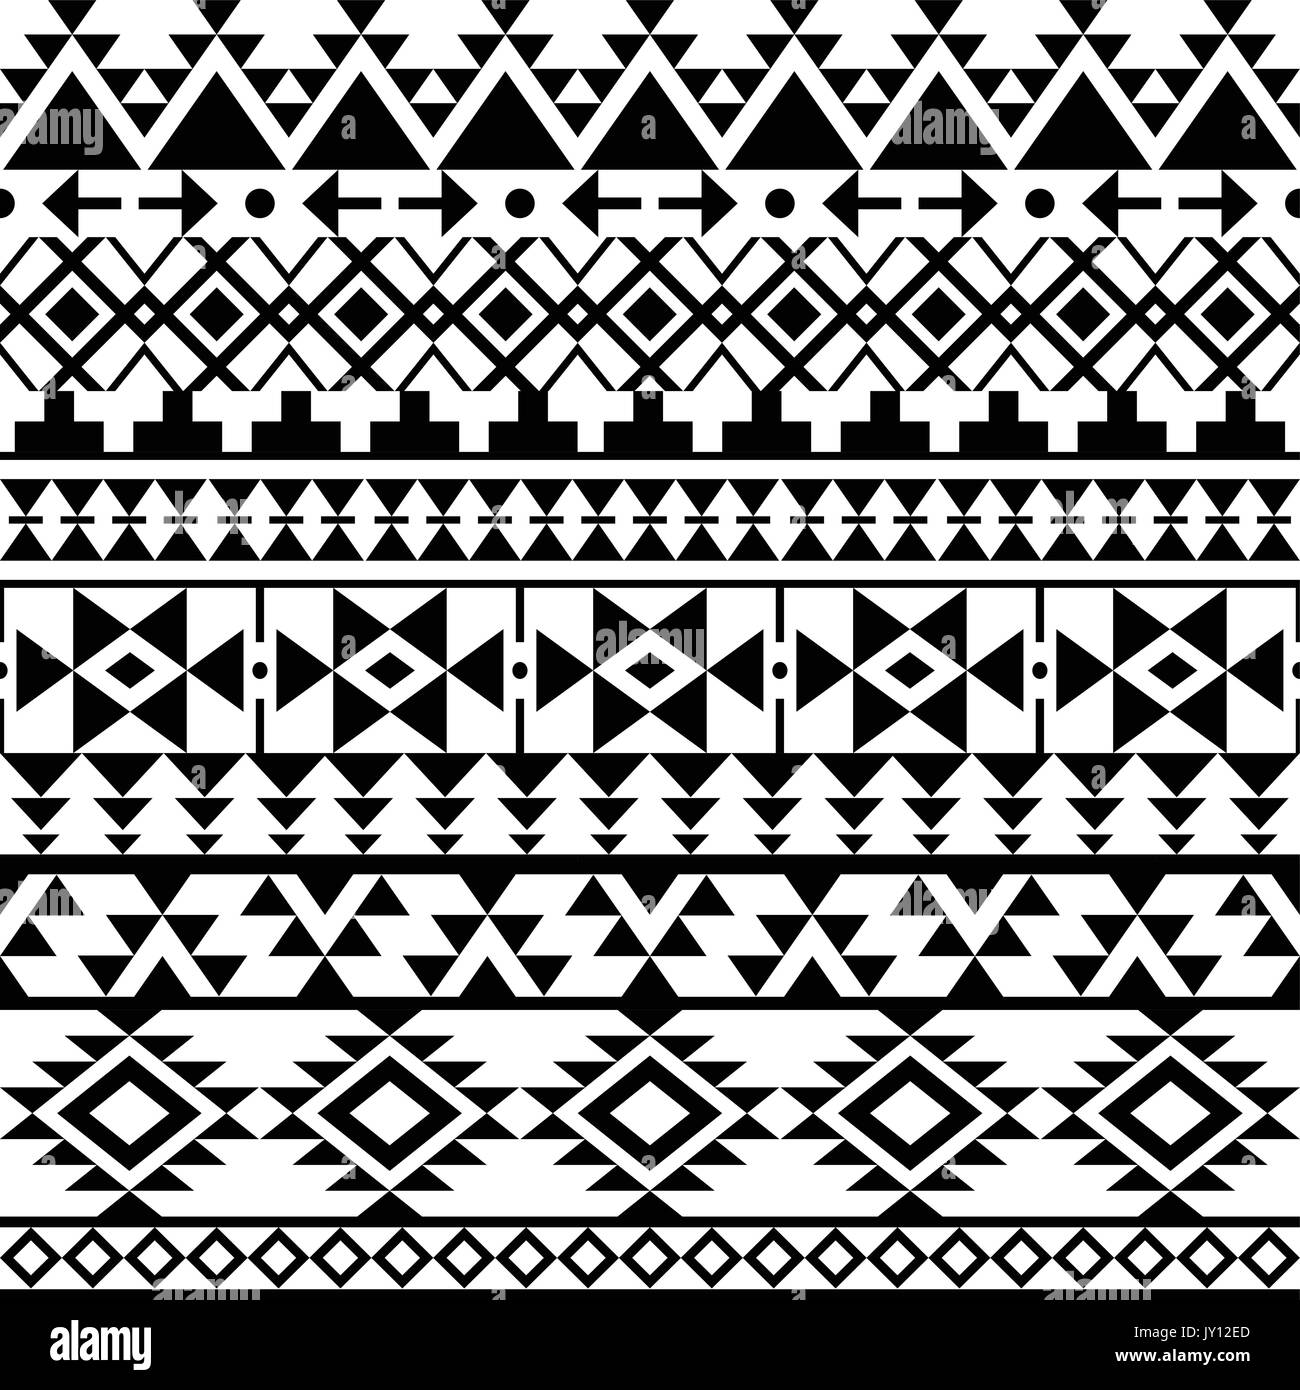 Nahtlose schwarz Navajo drucken, Aztec Muster, Tribal design Vector monochrome Folk nahtlose Aztec Ornament, ethnischen Sammlung, Tribal art Stock Vektor